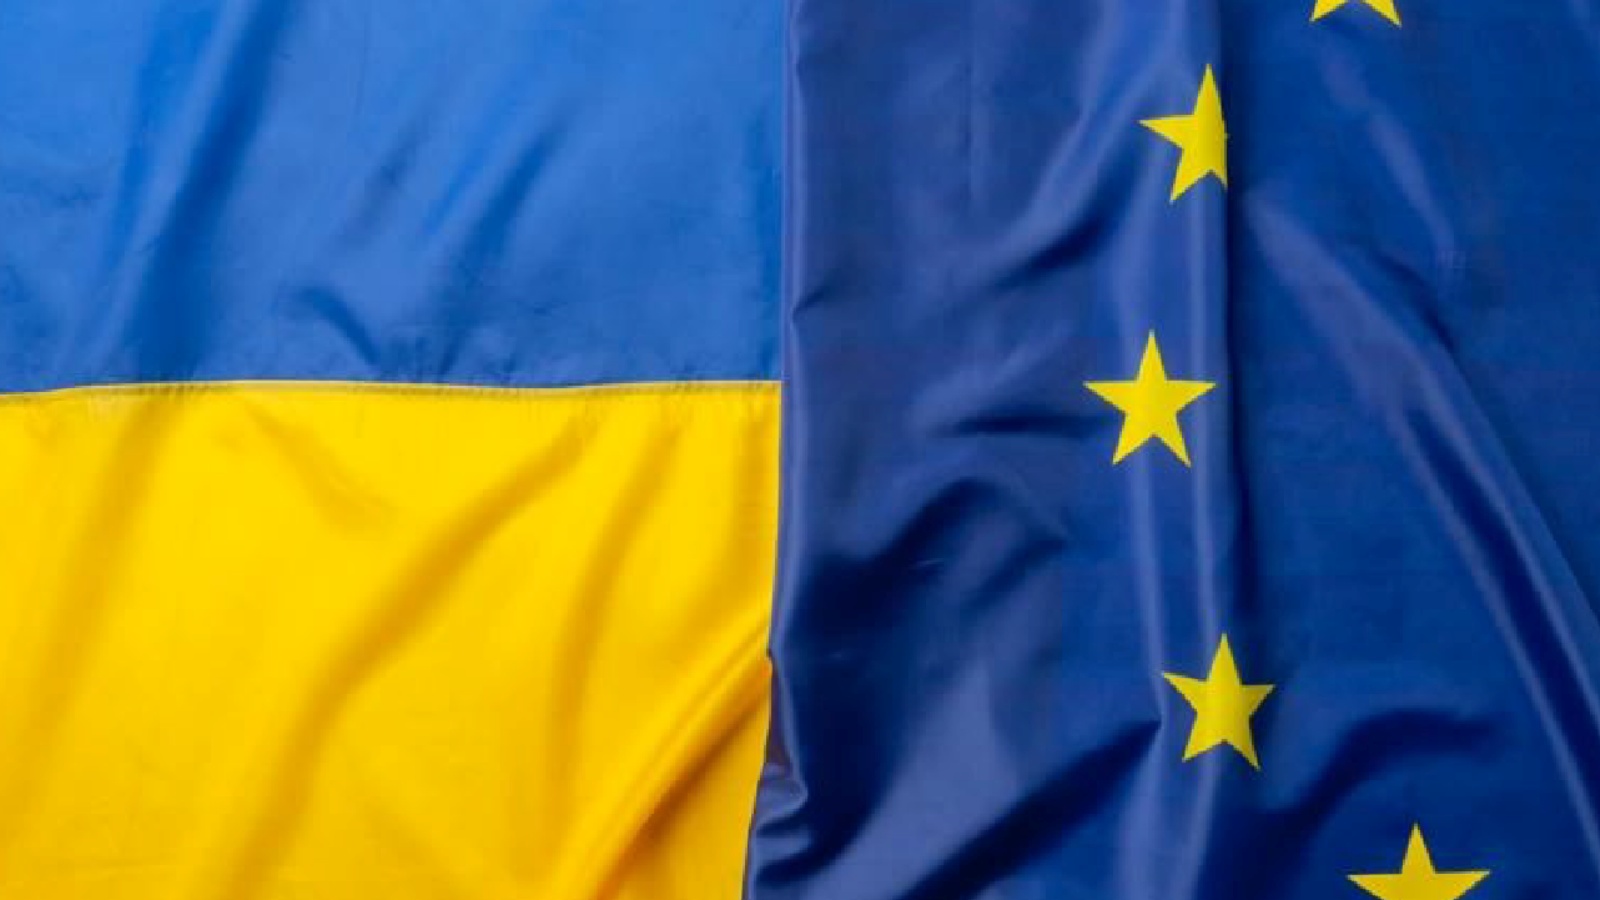 The European Union Provides Aid of 9 Billion Euros to Ukraine